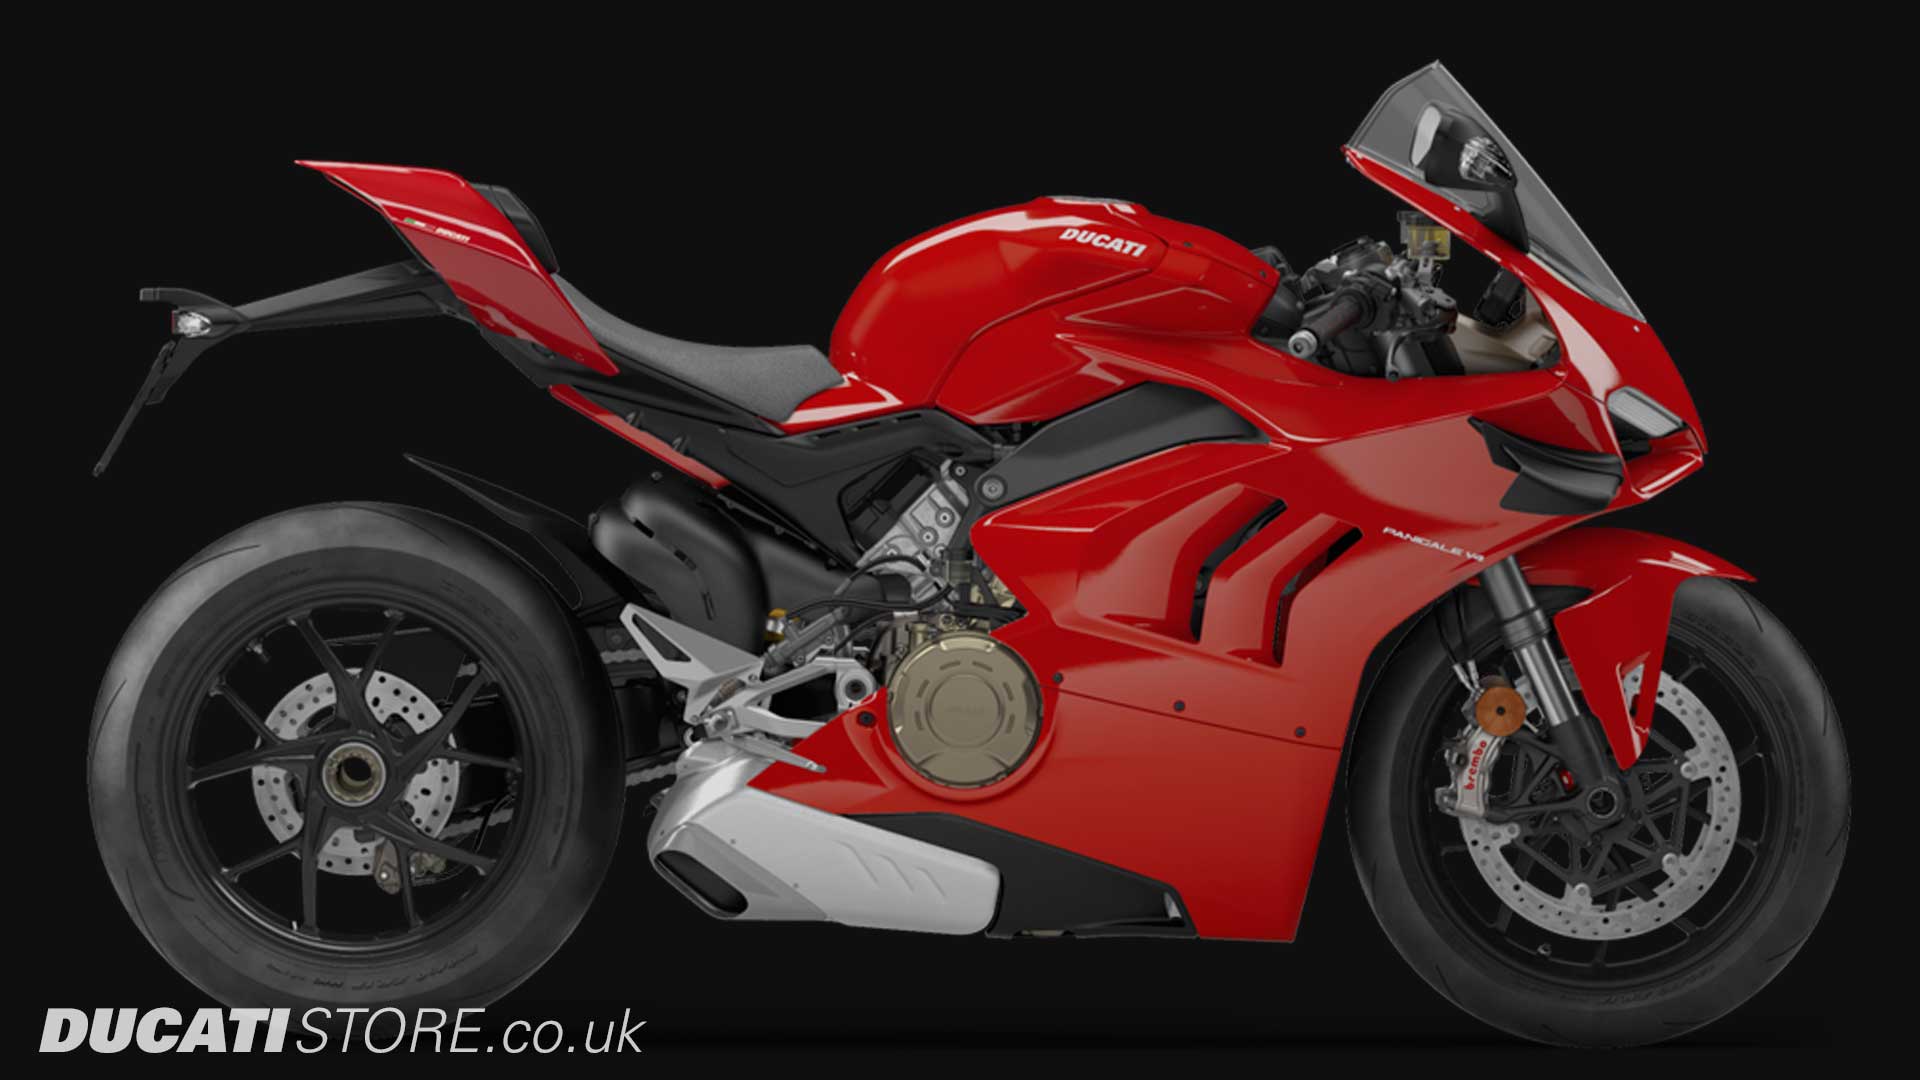 2020 Ducati Panigale V4 for sale at Ducati Preston, Lancashire, Scotland